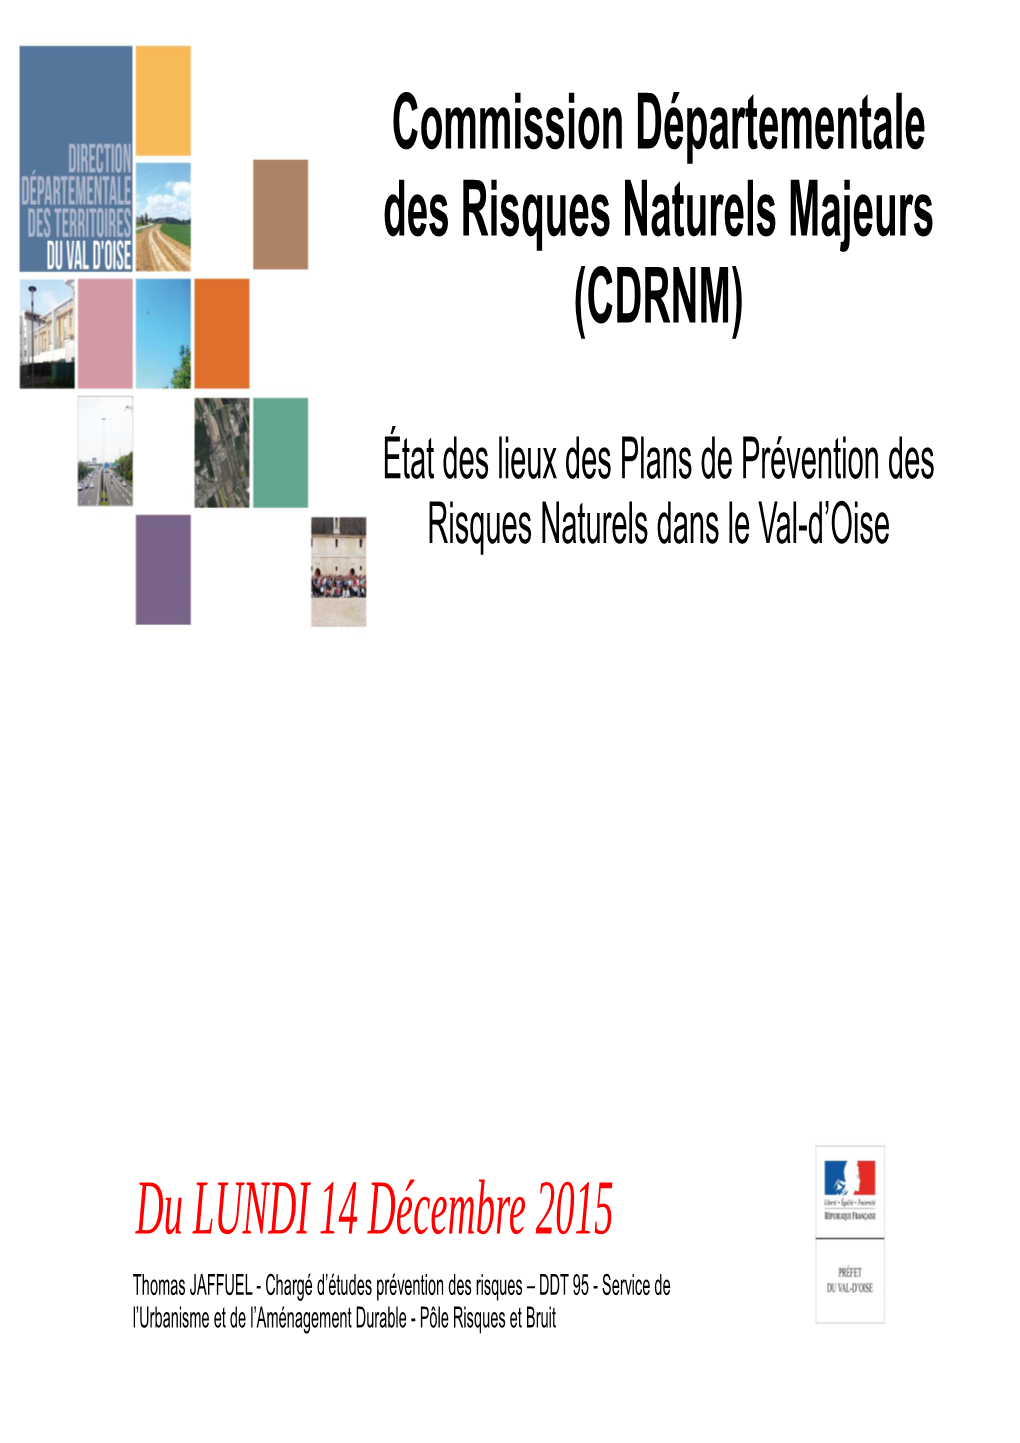 Commission Départementale Des Risques Naturels Majeurs (CDRNM)